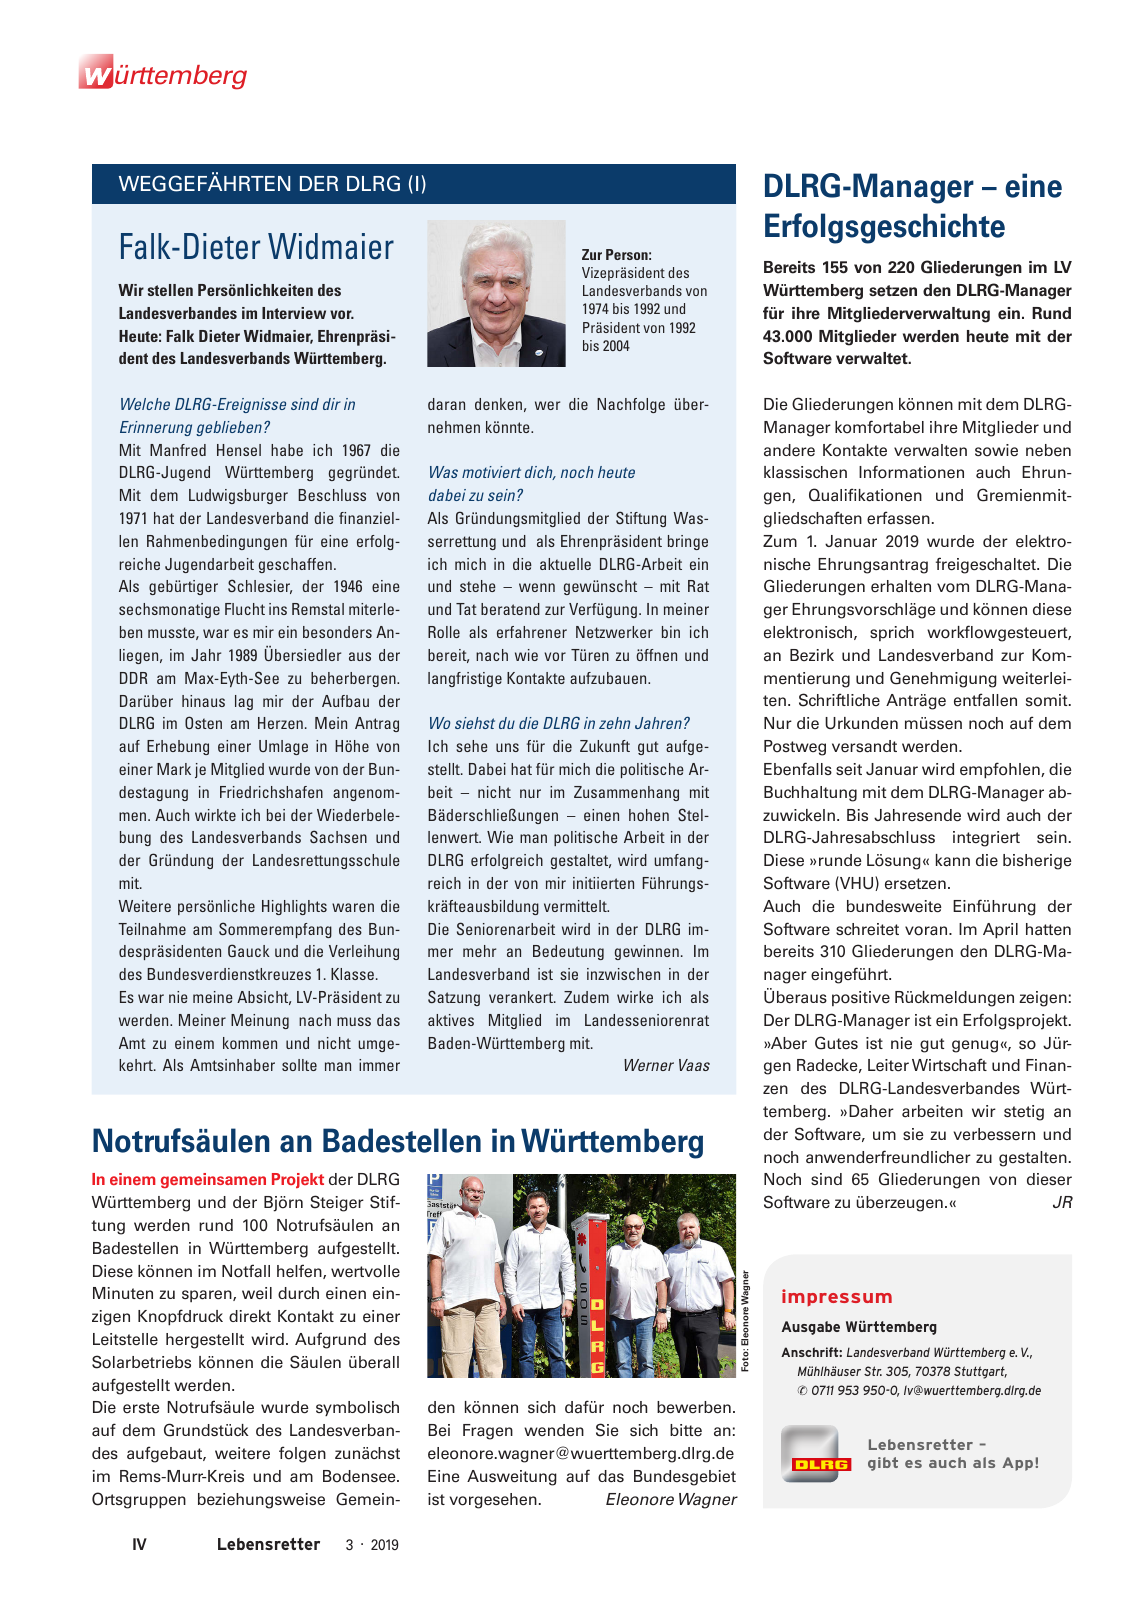 Vorschau Lebensretter 3/2019 - Württemberg Regionalausgabe Seite 6